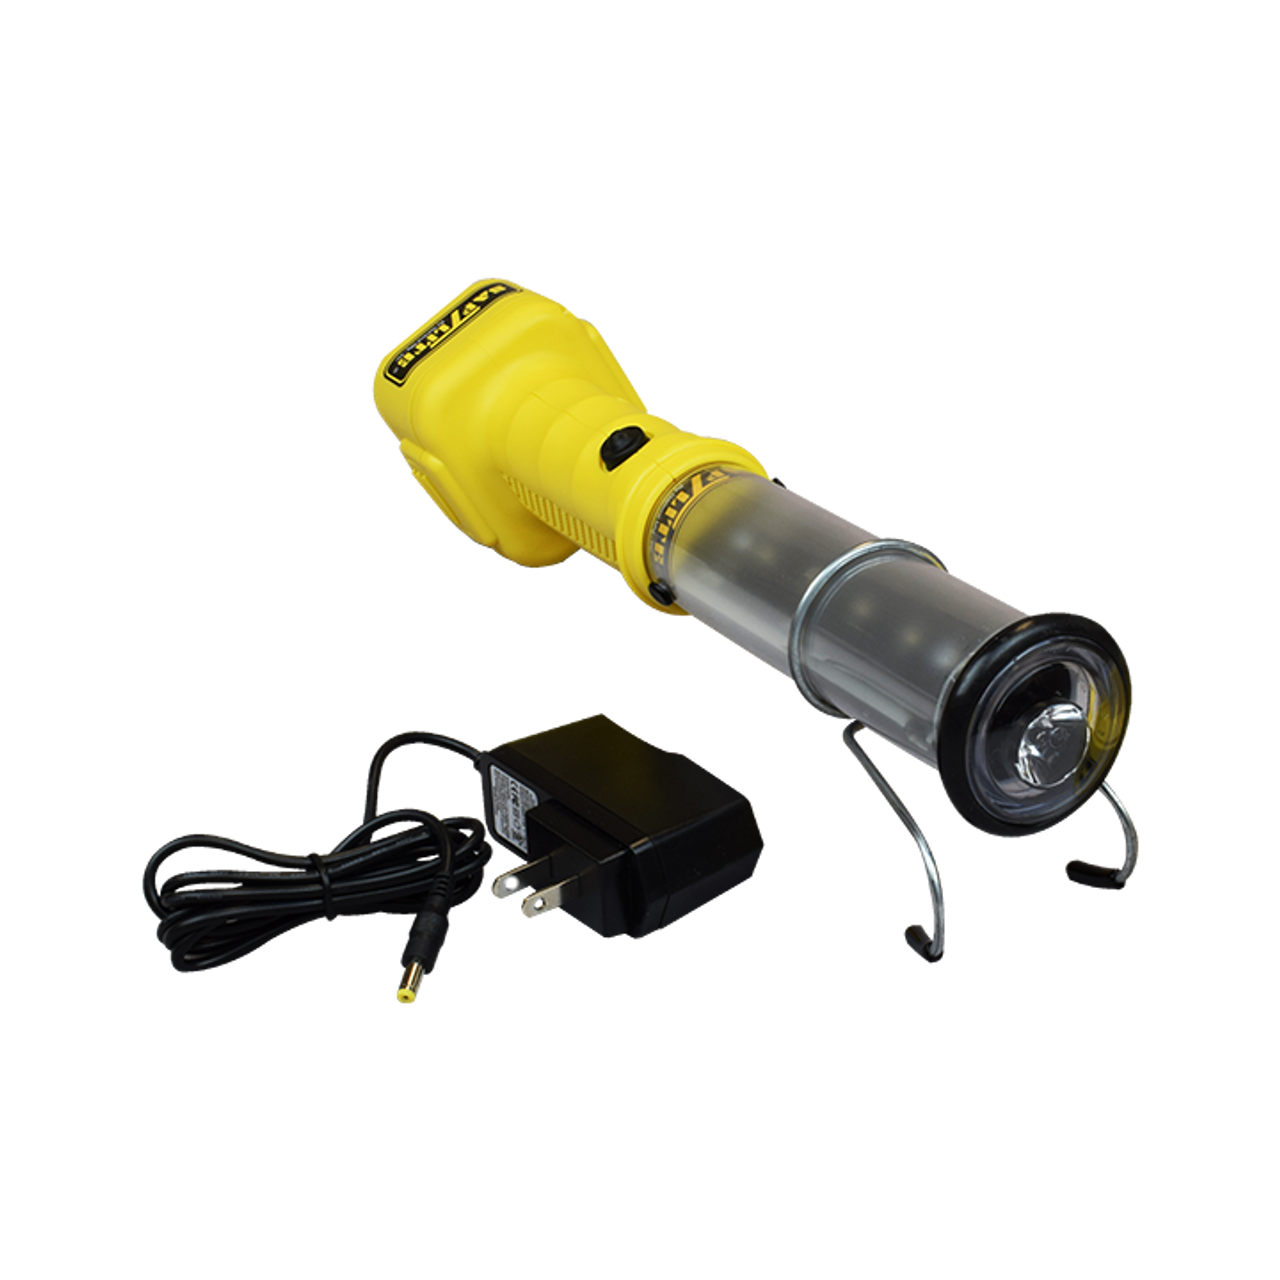 2302-0011 Saf-T-Lite STUBBY II Cordless LED Worklight